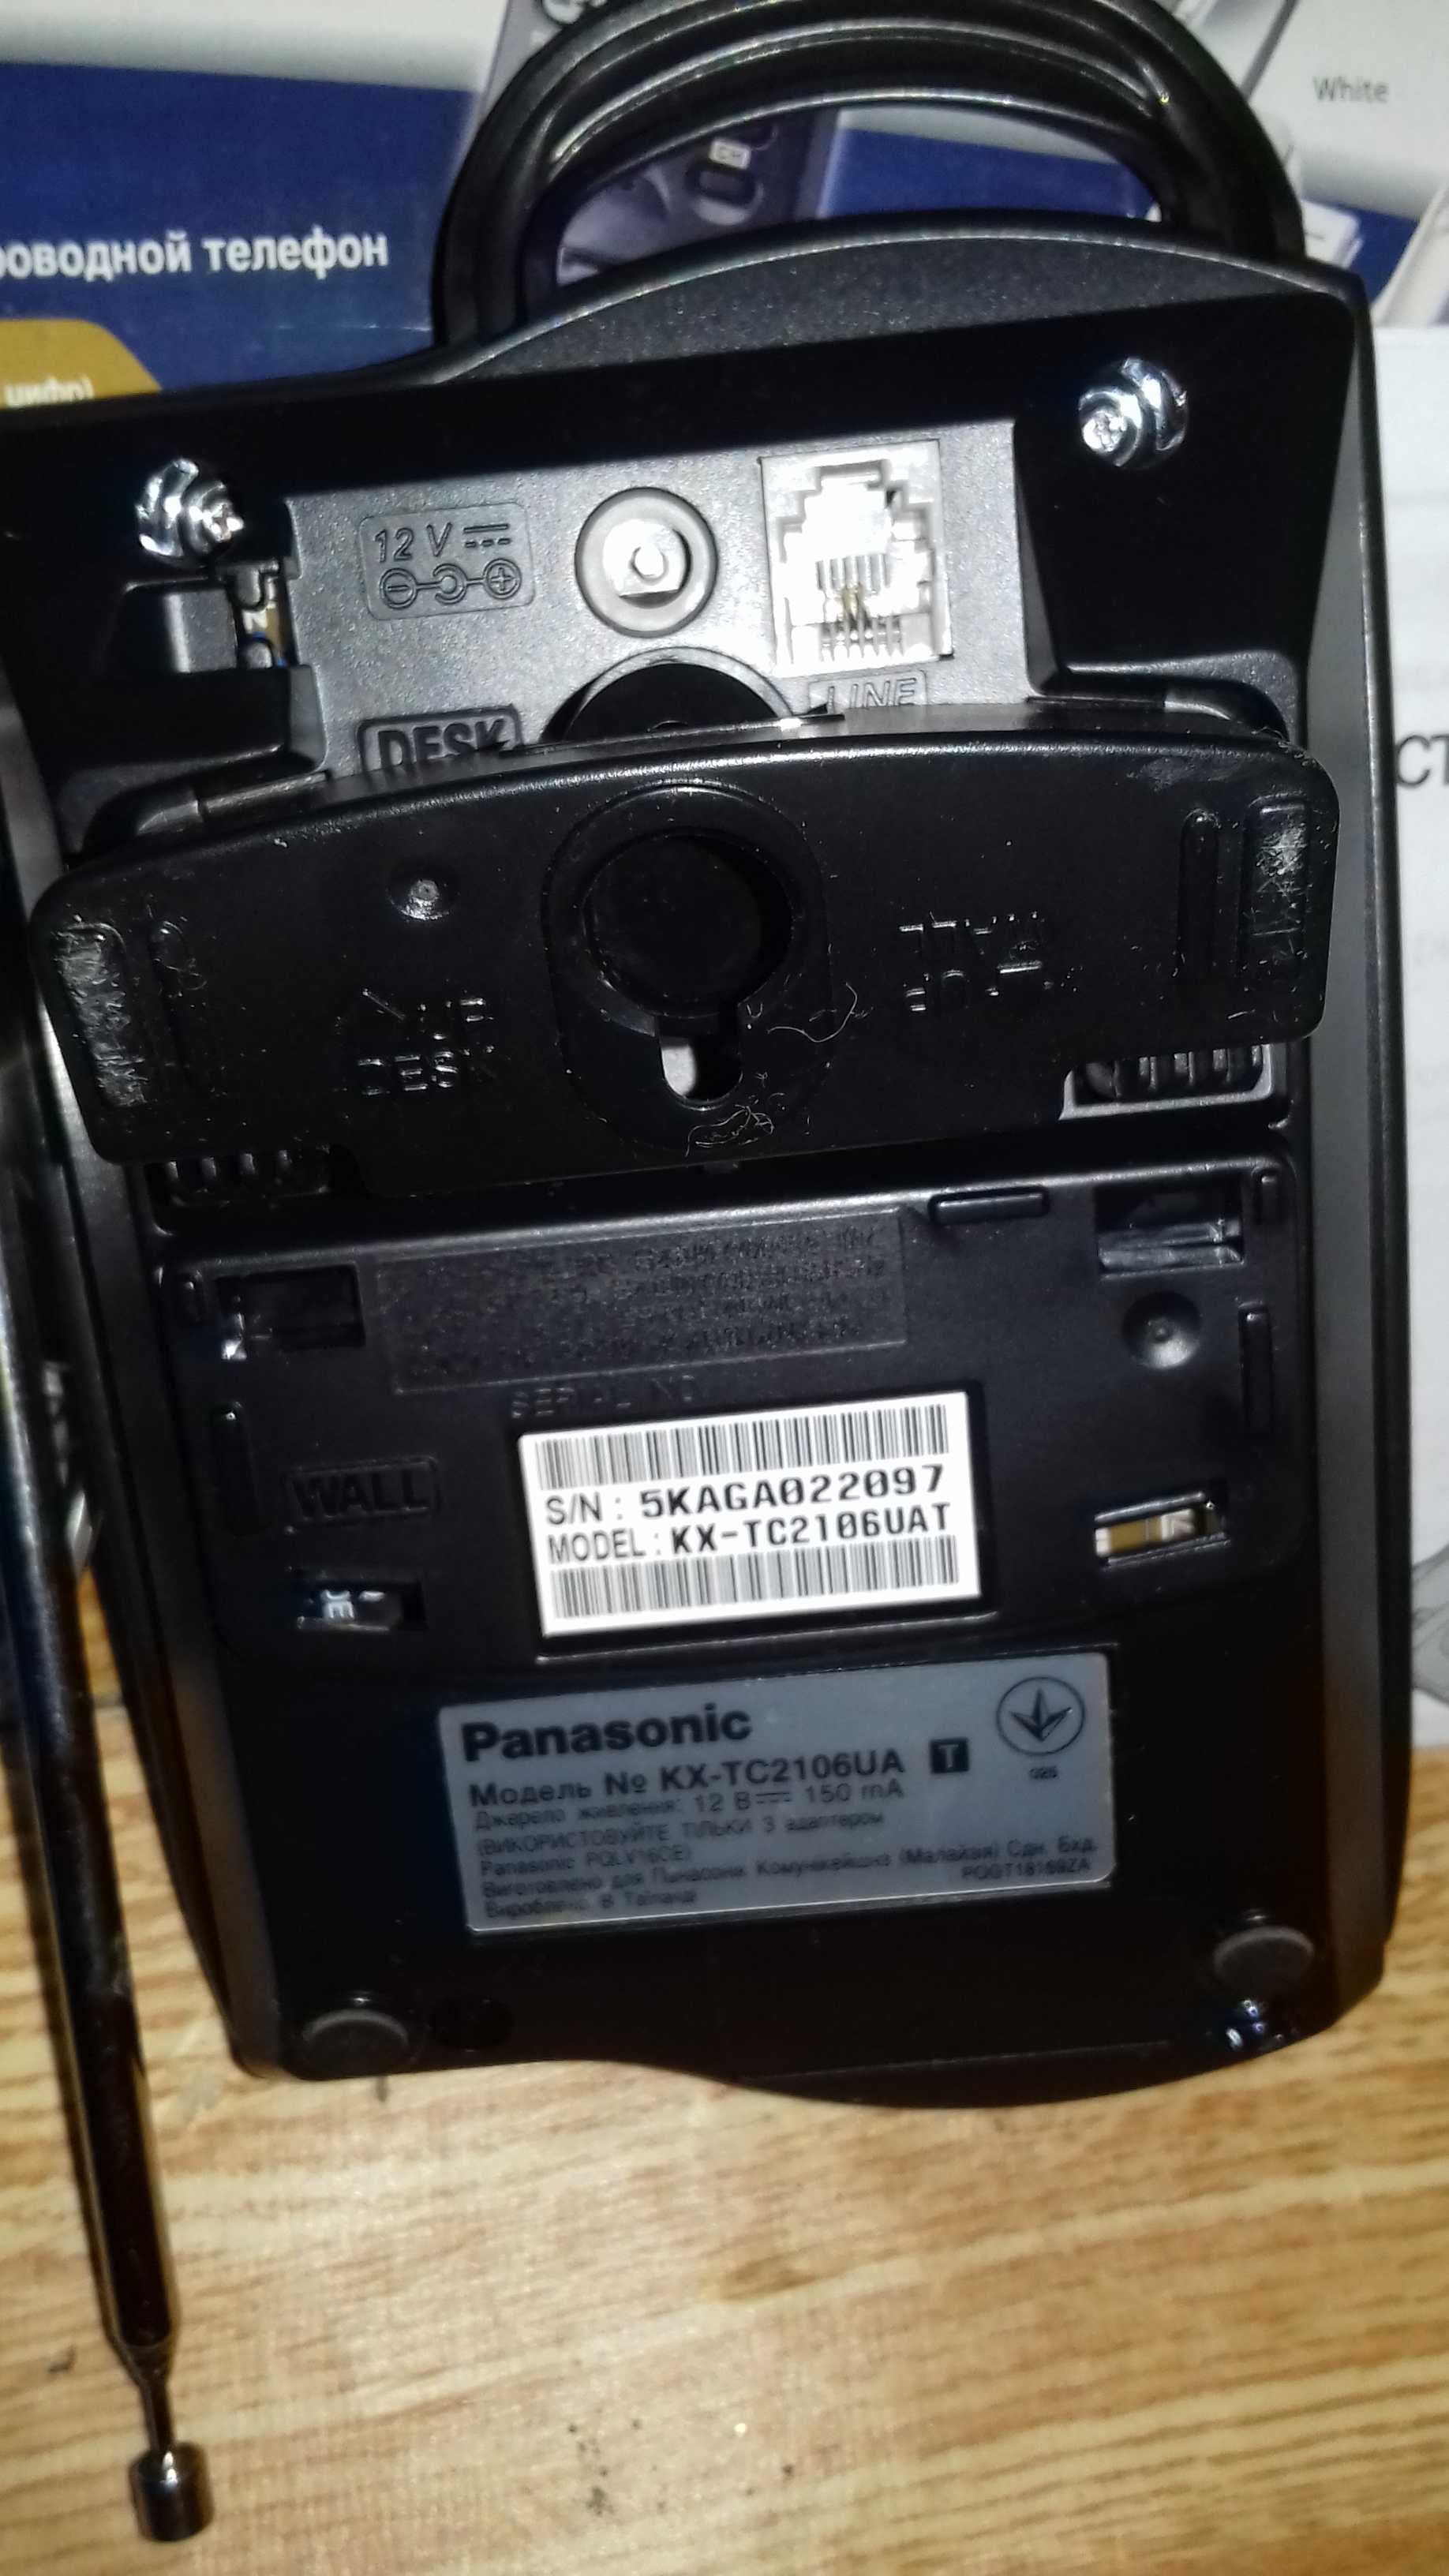 Беспроводной телефон Panasonic kx-tc2106ua